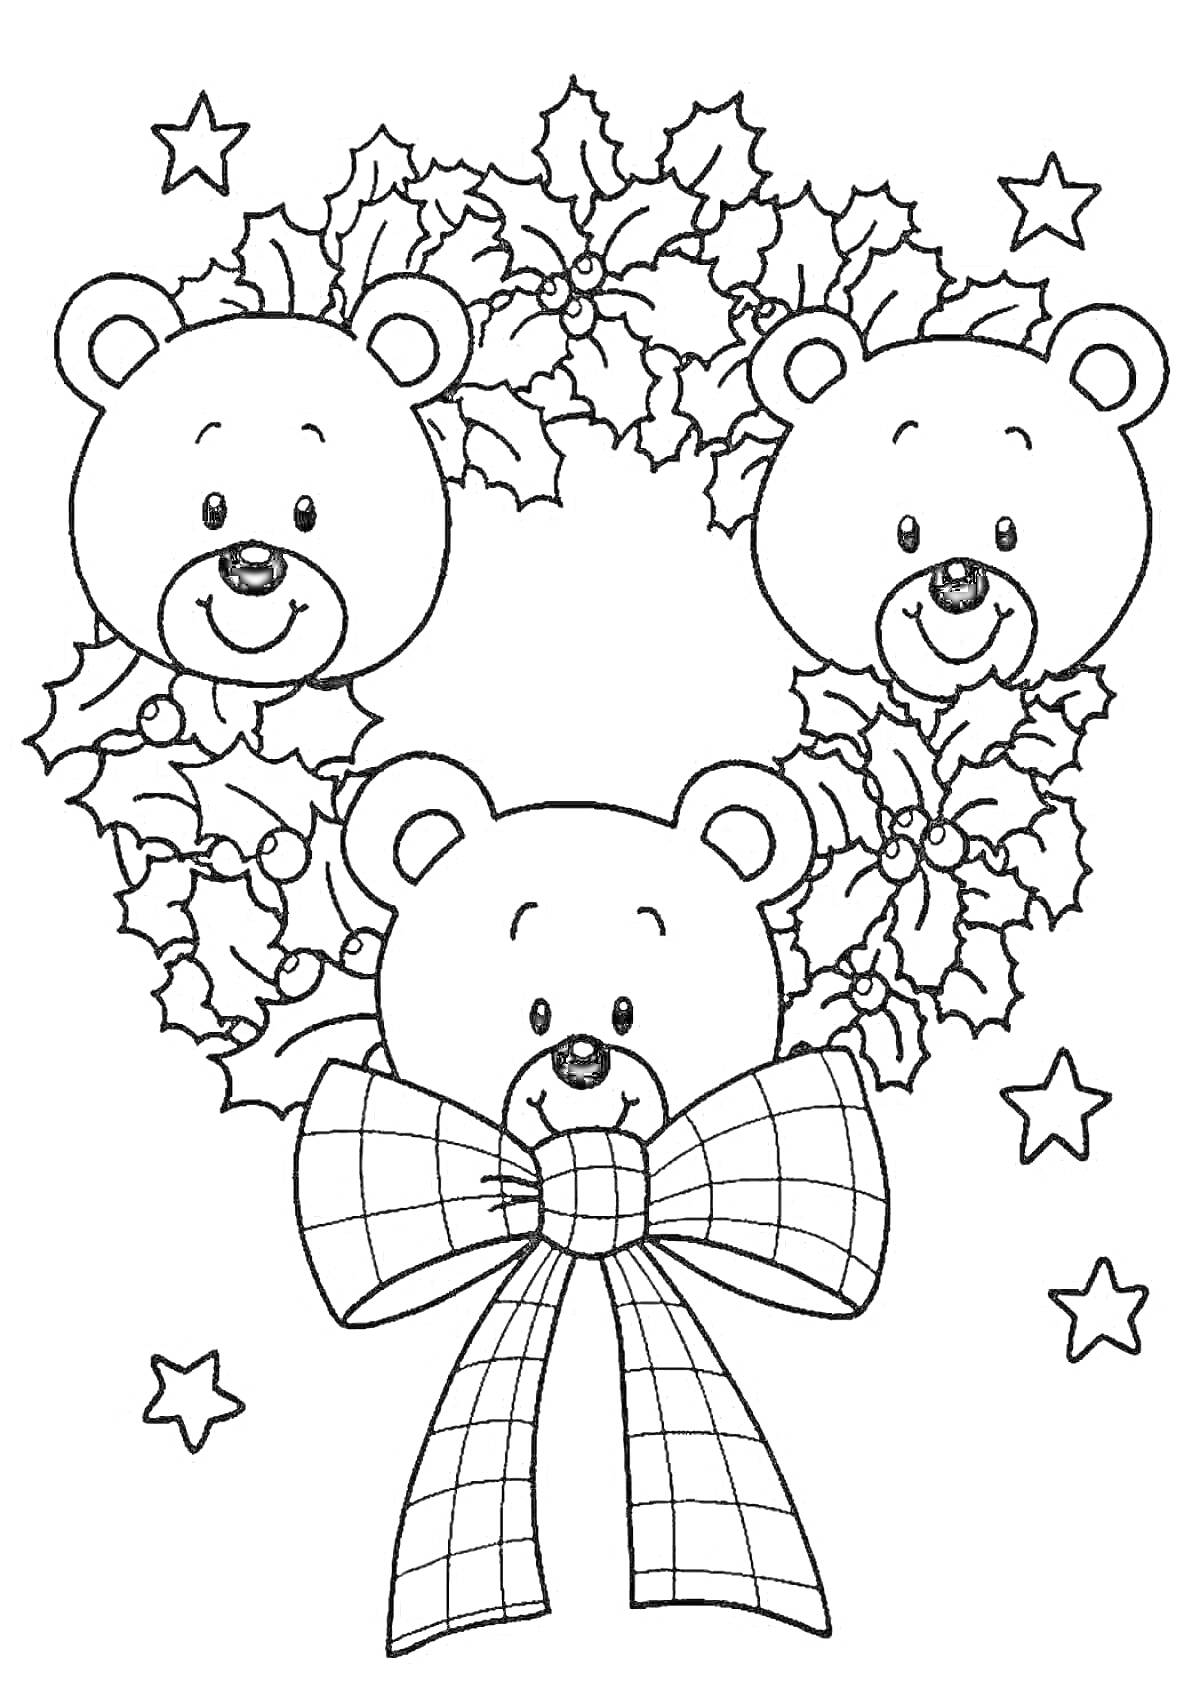 Раскраска Три медвежонка среди рождественского венка из листьев остролиста с бантом и звёздочками